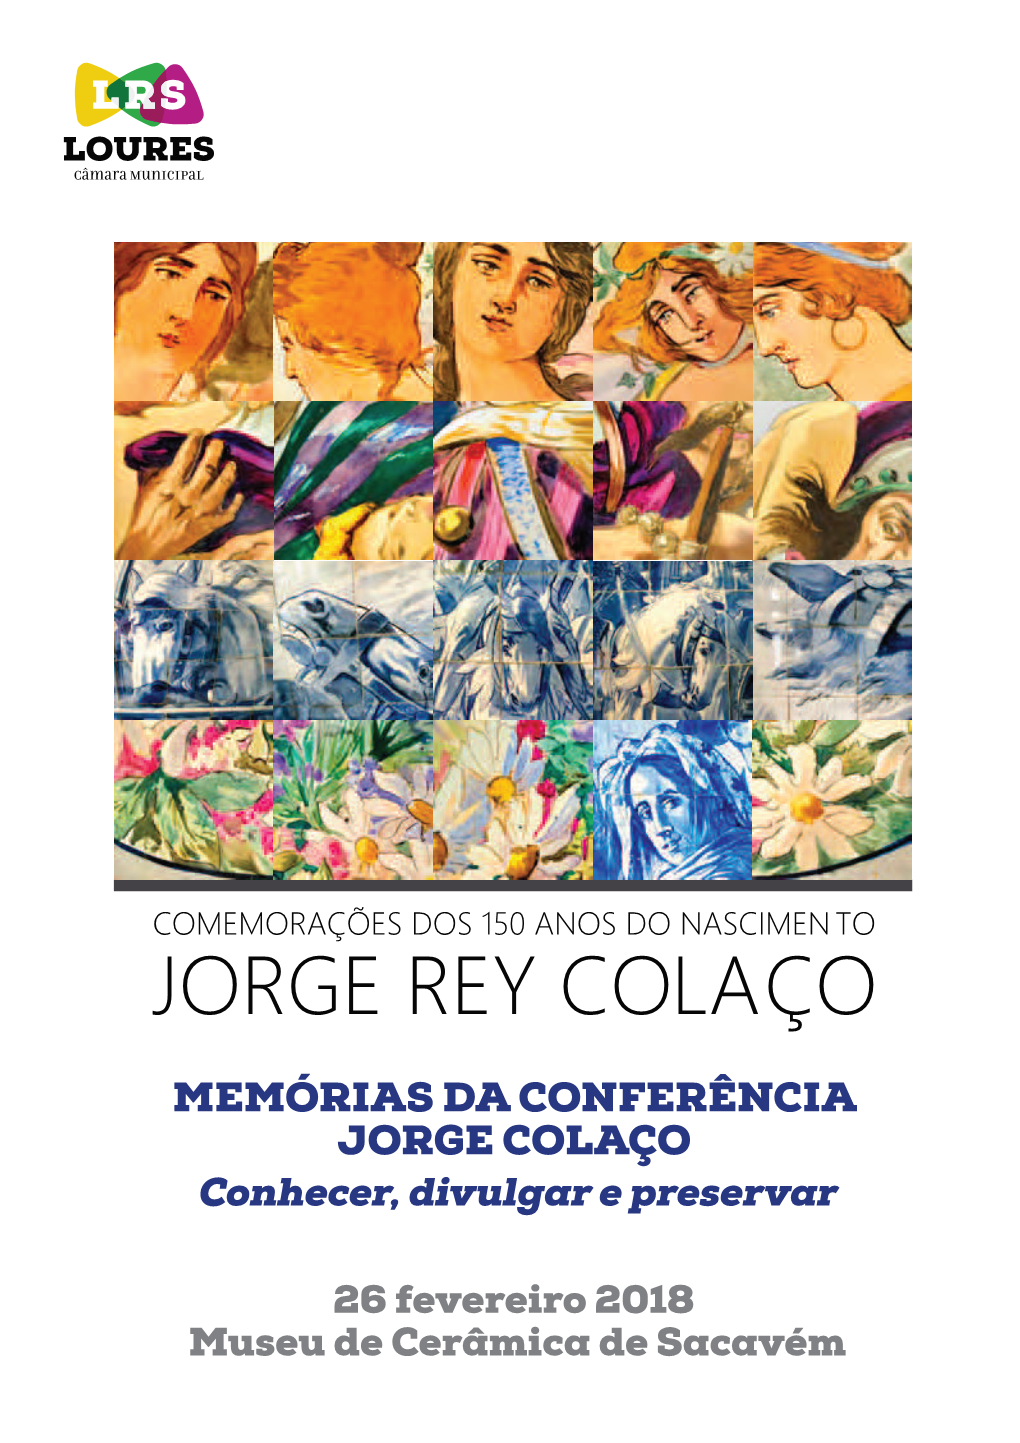 Jorge Rey Colaço